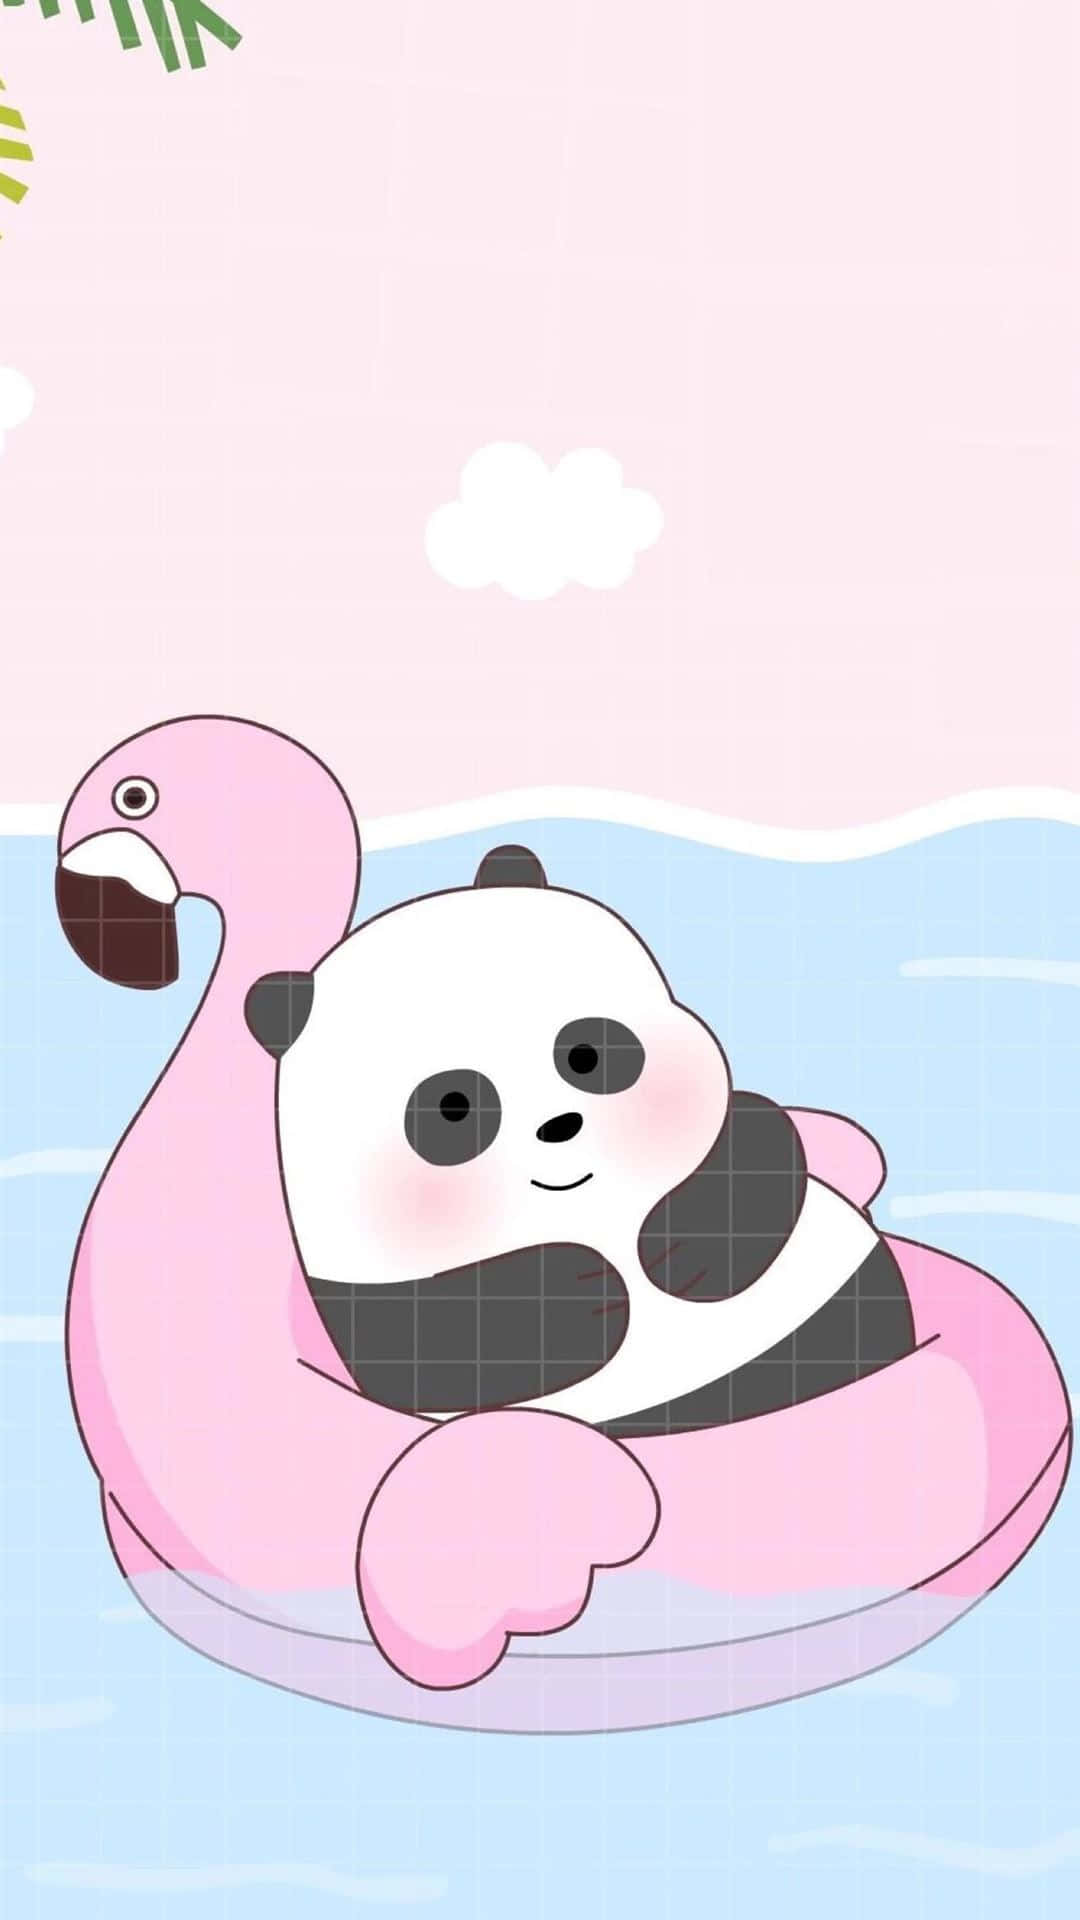 En pandabjørn flyder i en himmel fyldt med pink flamingoer Wallpaper